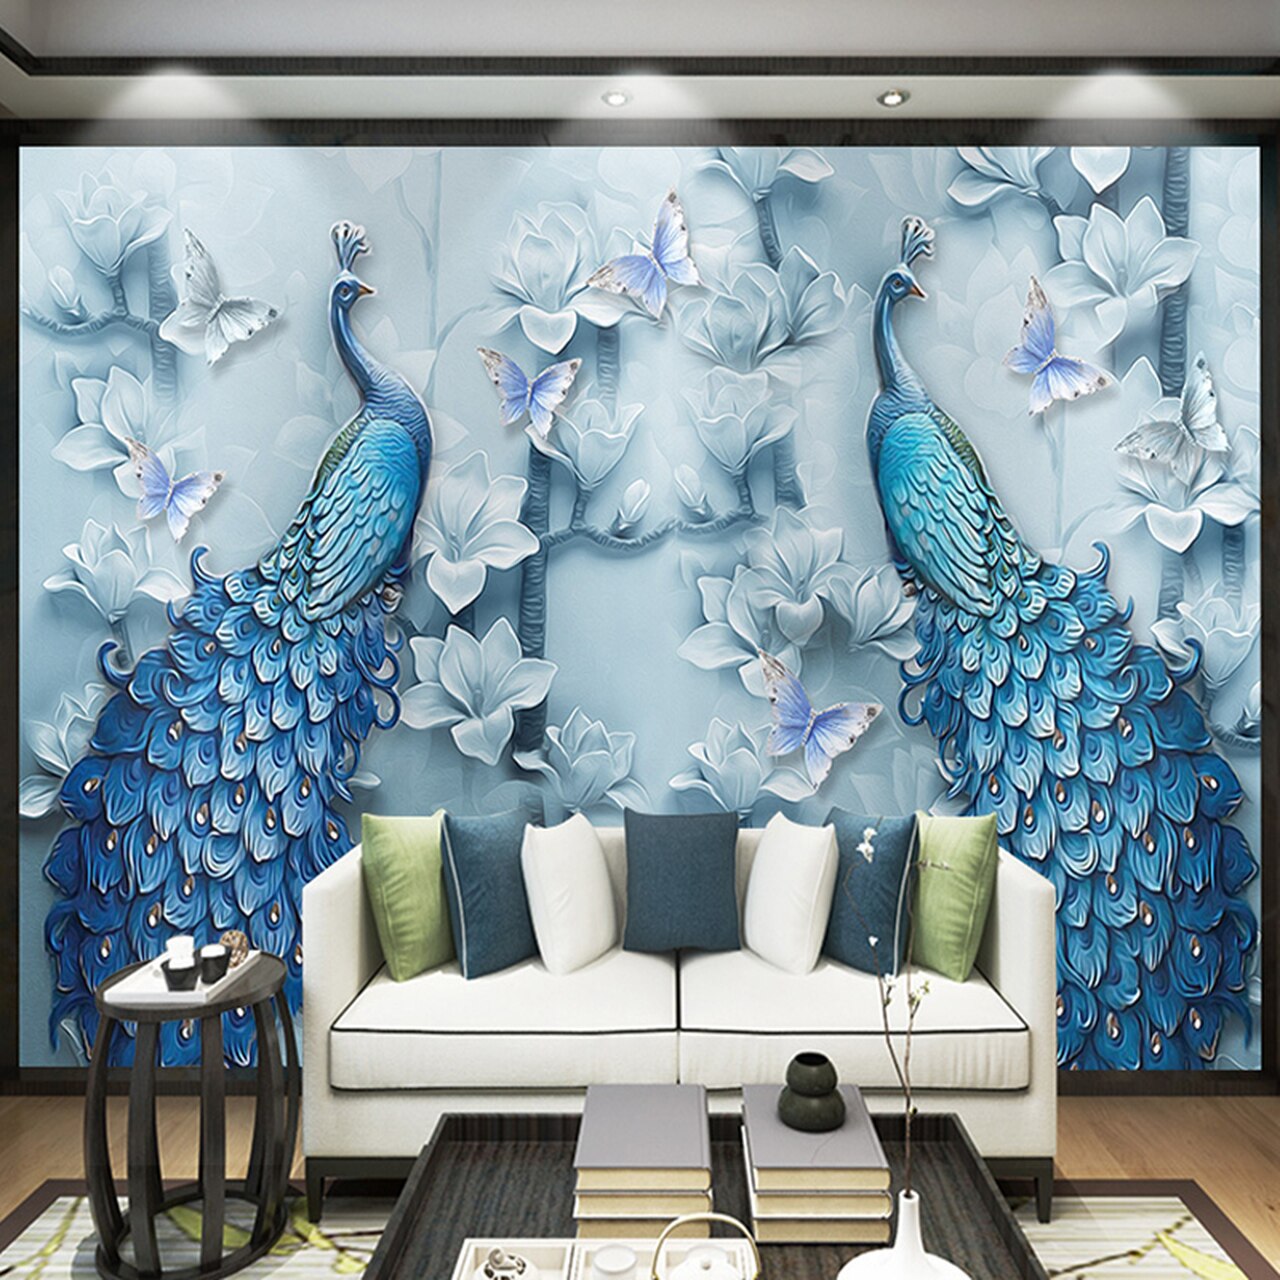 Shutterstock 3d Wallpaper Peacock - HD Wallpaper 